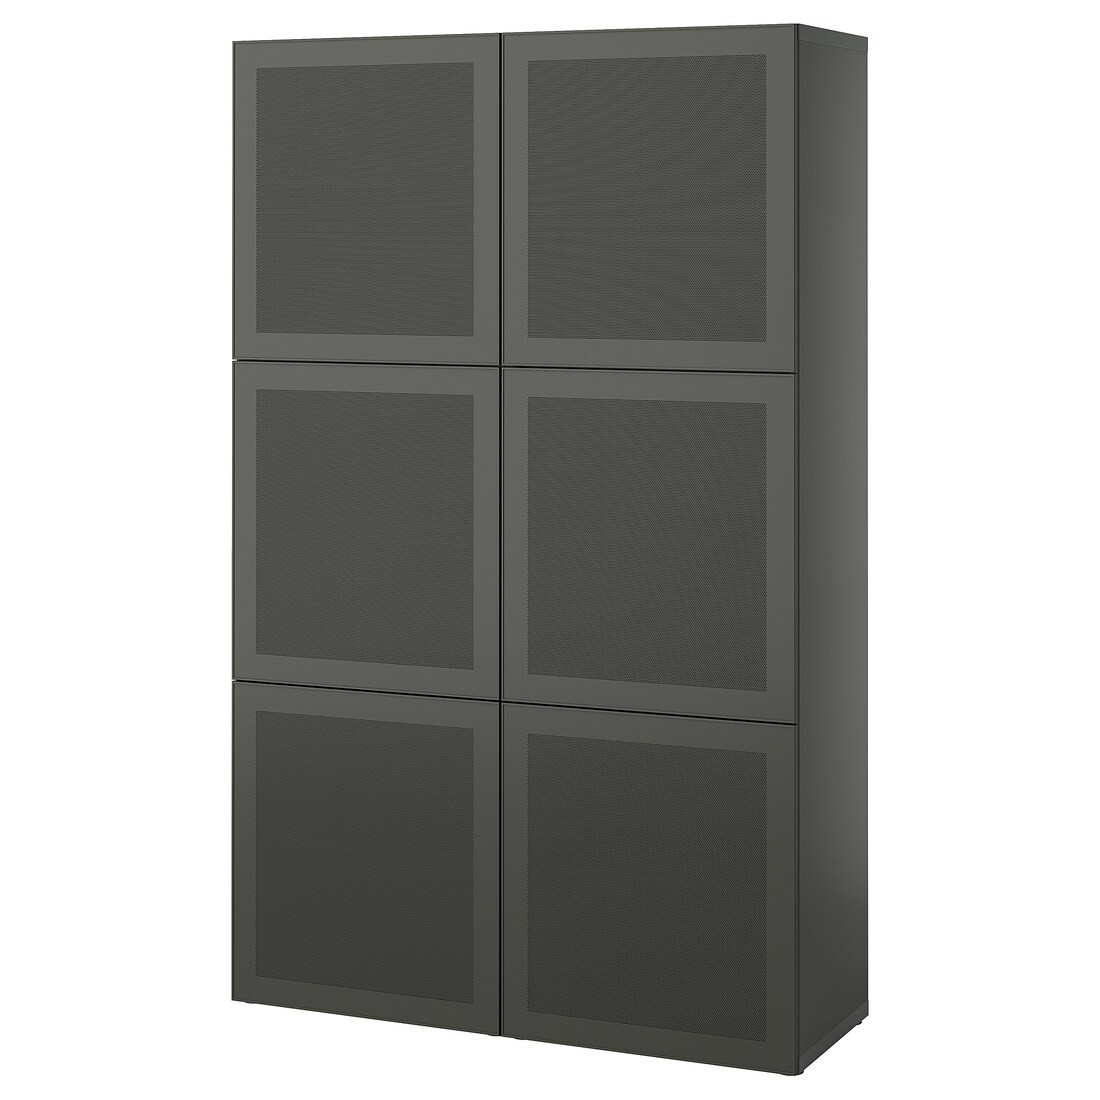 IKEA BESTÅ Комбинация для хранения с дверцами, темно-серый / Mörtviken темно-серый, 120x42x193 см 09508141 095.081.41